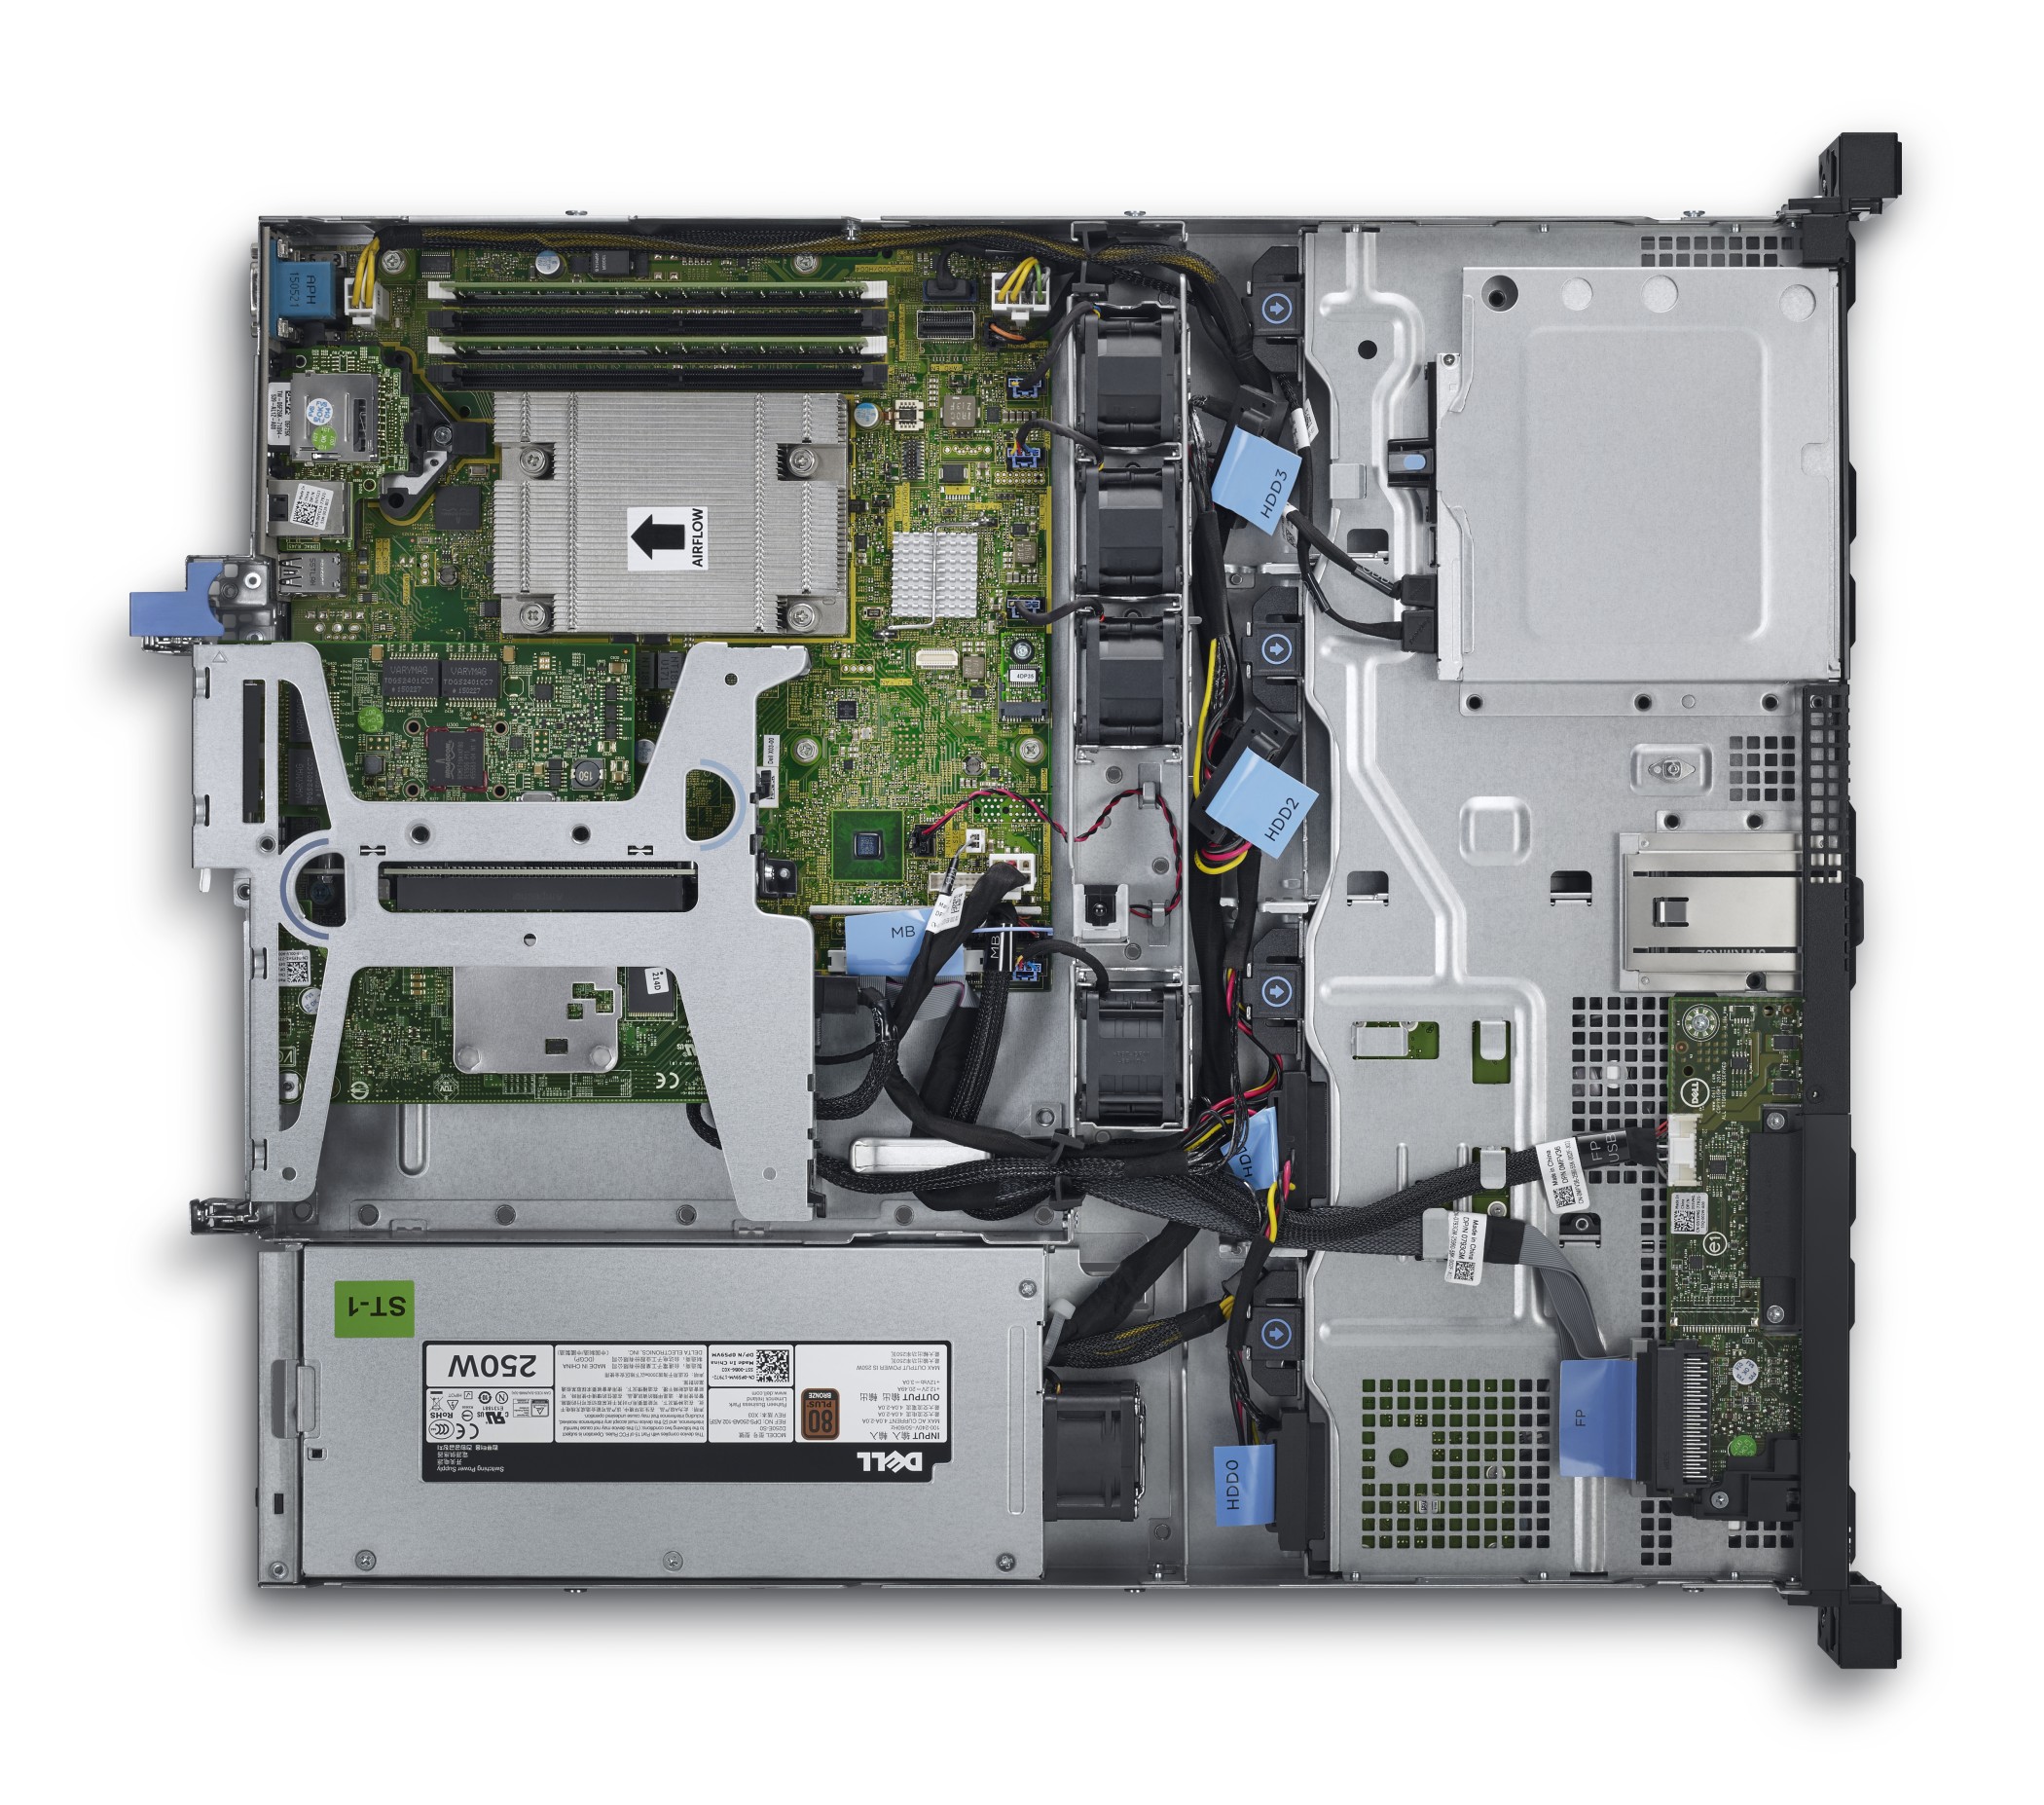 戴尔Dell PowerEdge R230机架式服务器（英特尔®至强®E3-1220 v6处理器/标配4G UDIMM内存/1TB 7.2K RPM SATA硬盘） 产品图